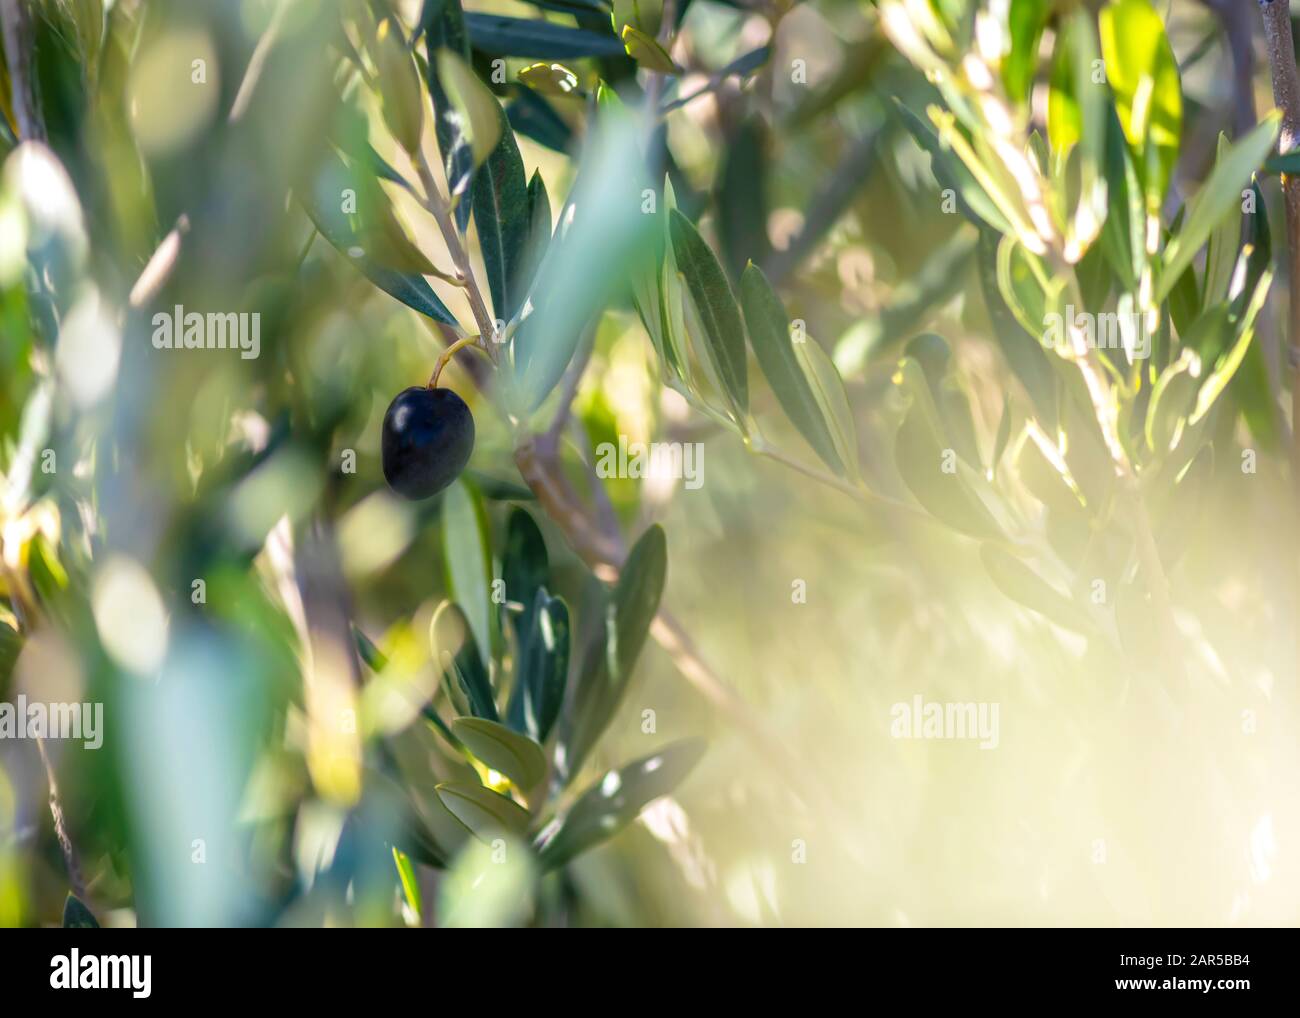 Stimmungsvolles, sonniges Kunstbild gesunder schwarzer Oliven, die an einem Baum hängen und in selektivem Fokus verschwommener Hintergrund für Kopier- und Textdarstellung aufgenommen werden Stockfoto